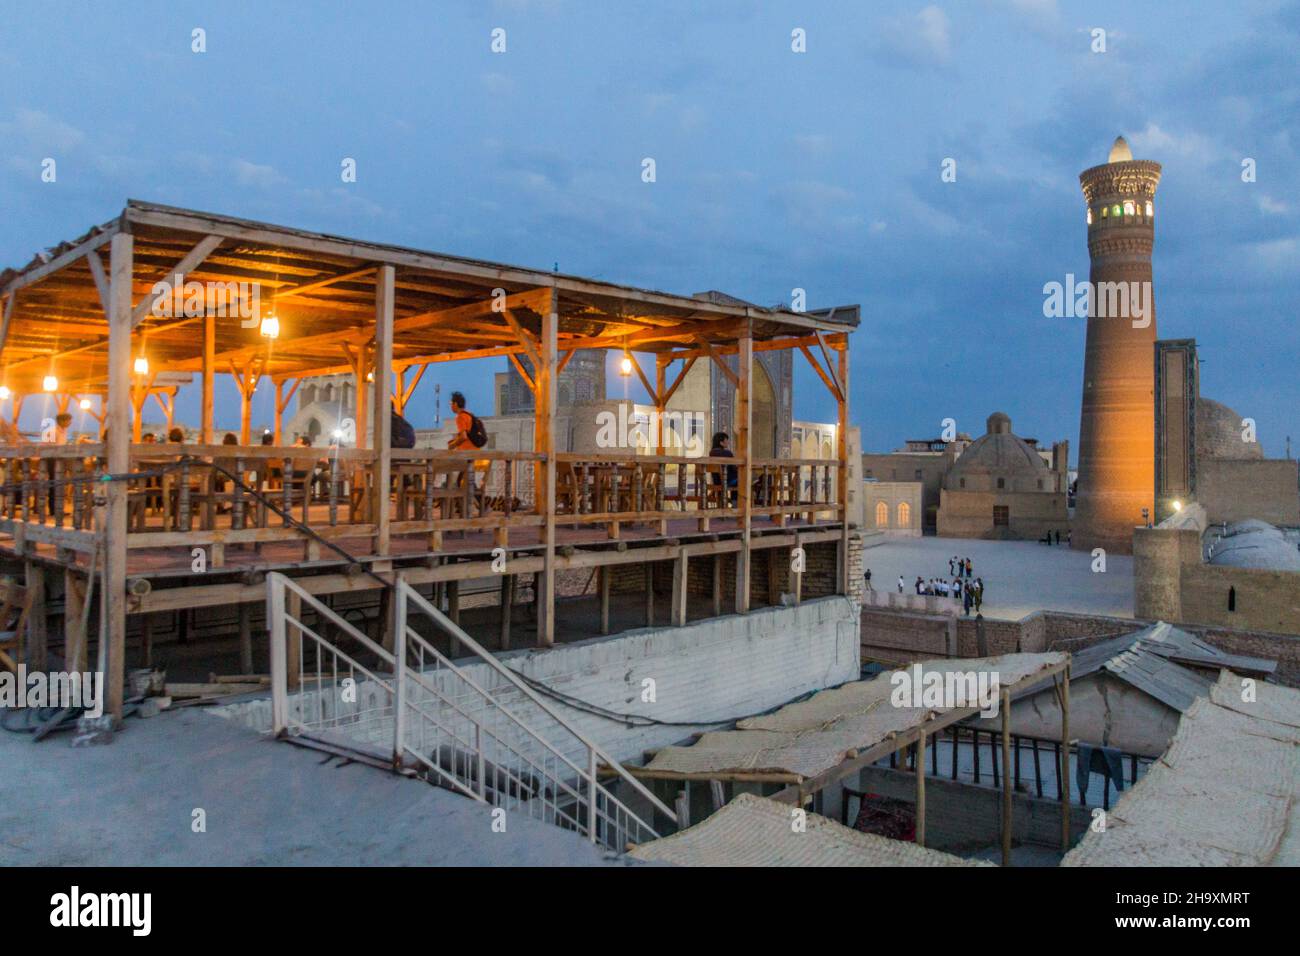 BUKHARA, UZBEKISTAN - APRIL 30, 2018: Evening view of Mir-i-Arab Madrasa, Kalan minaret and mosque and a cafe terrace in Bukhara, Uzbekistan Stock Photo